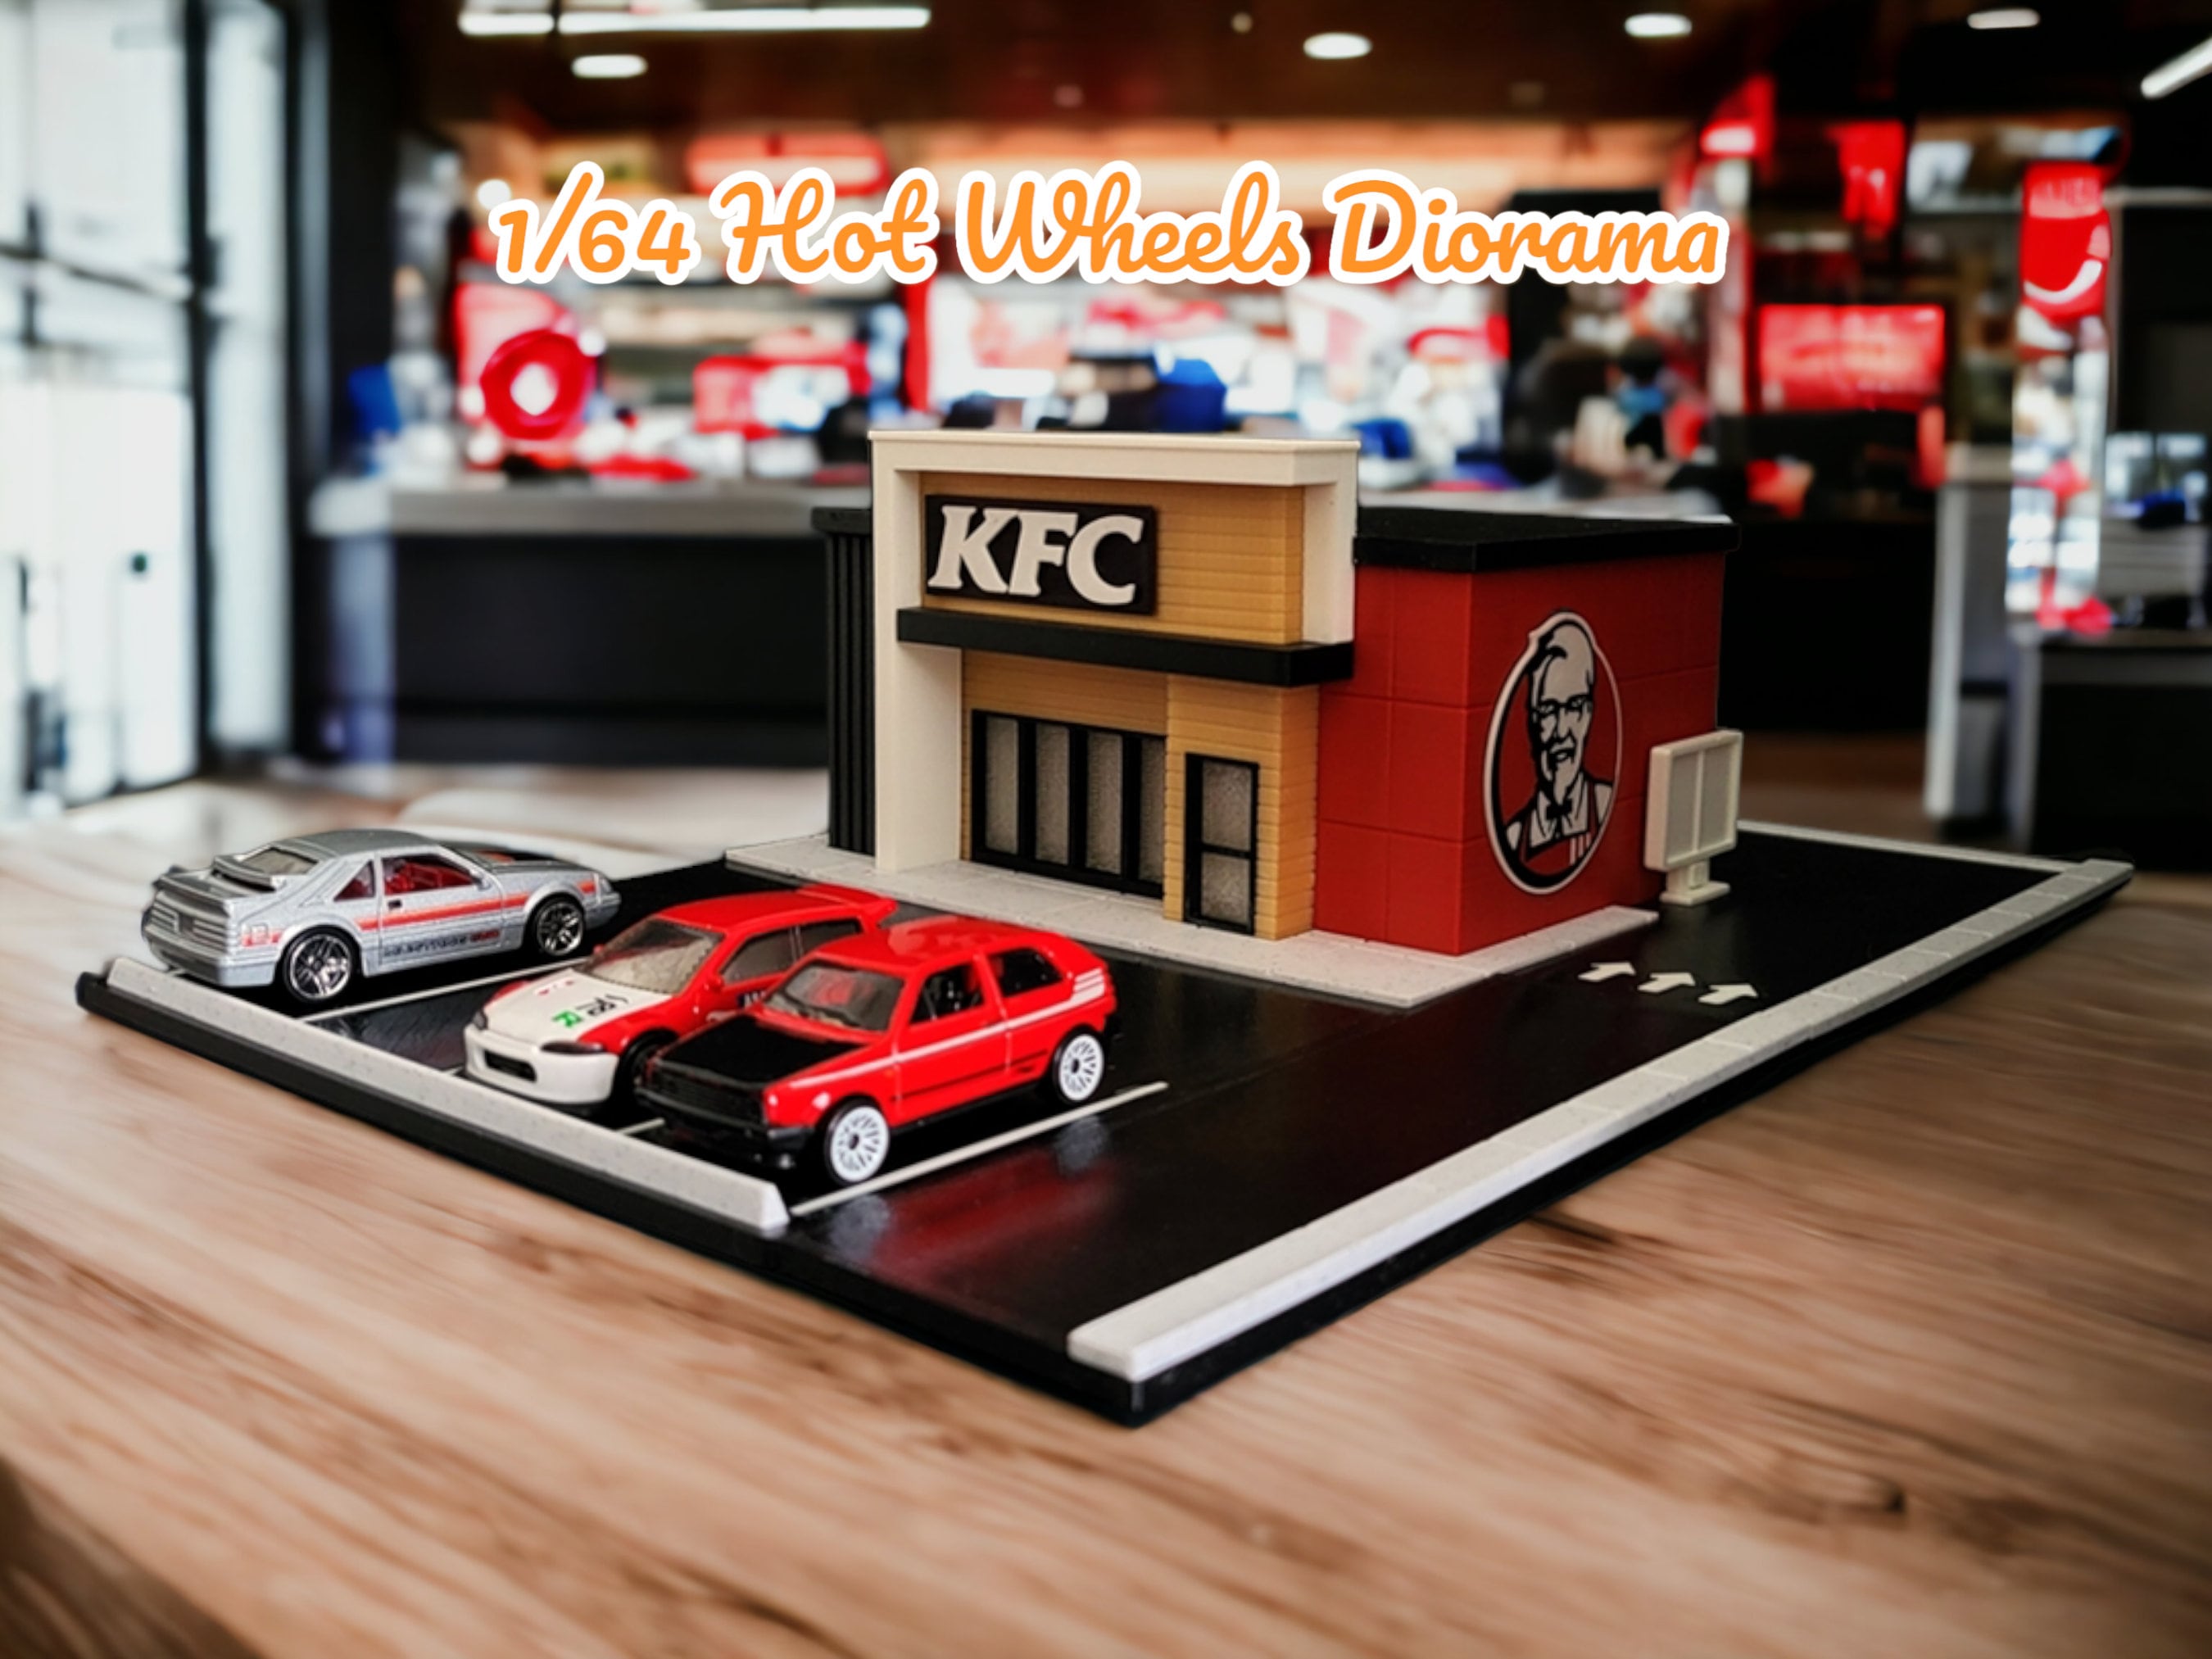 Étui de rangement pour jouets compatible avec Hot Wheels Car, pour boîtes  d'allumettes, support de transport portable pour 36 jouets de voiture  (boîte uniquement)